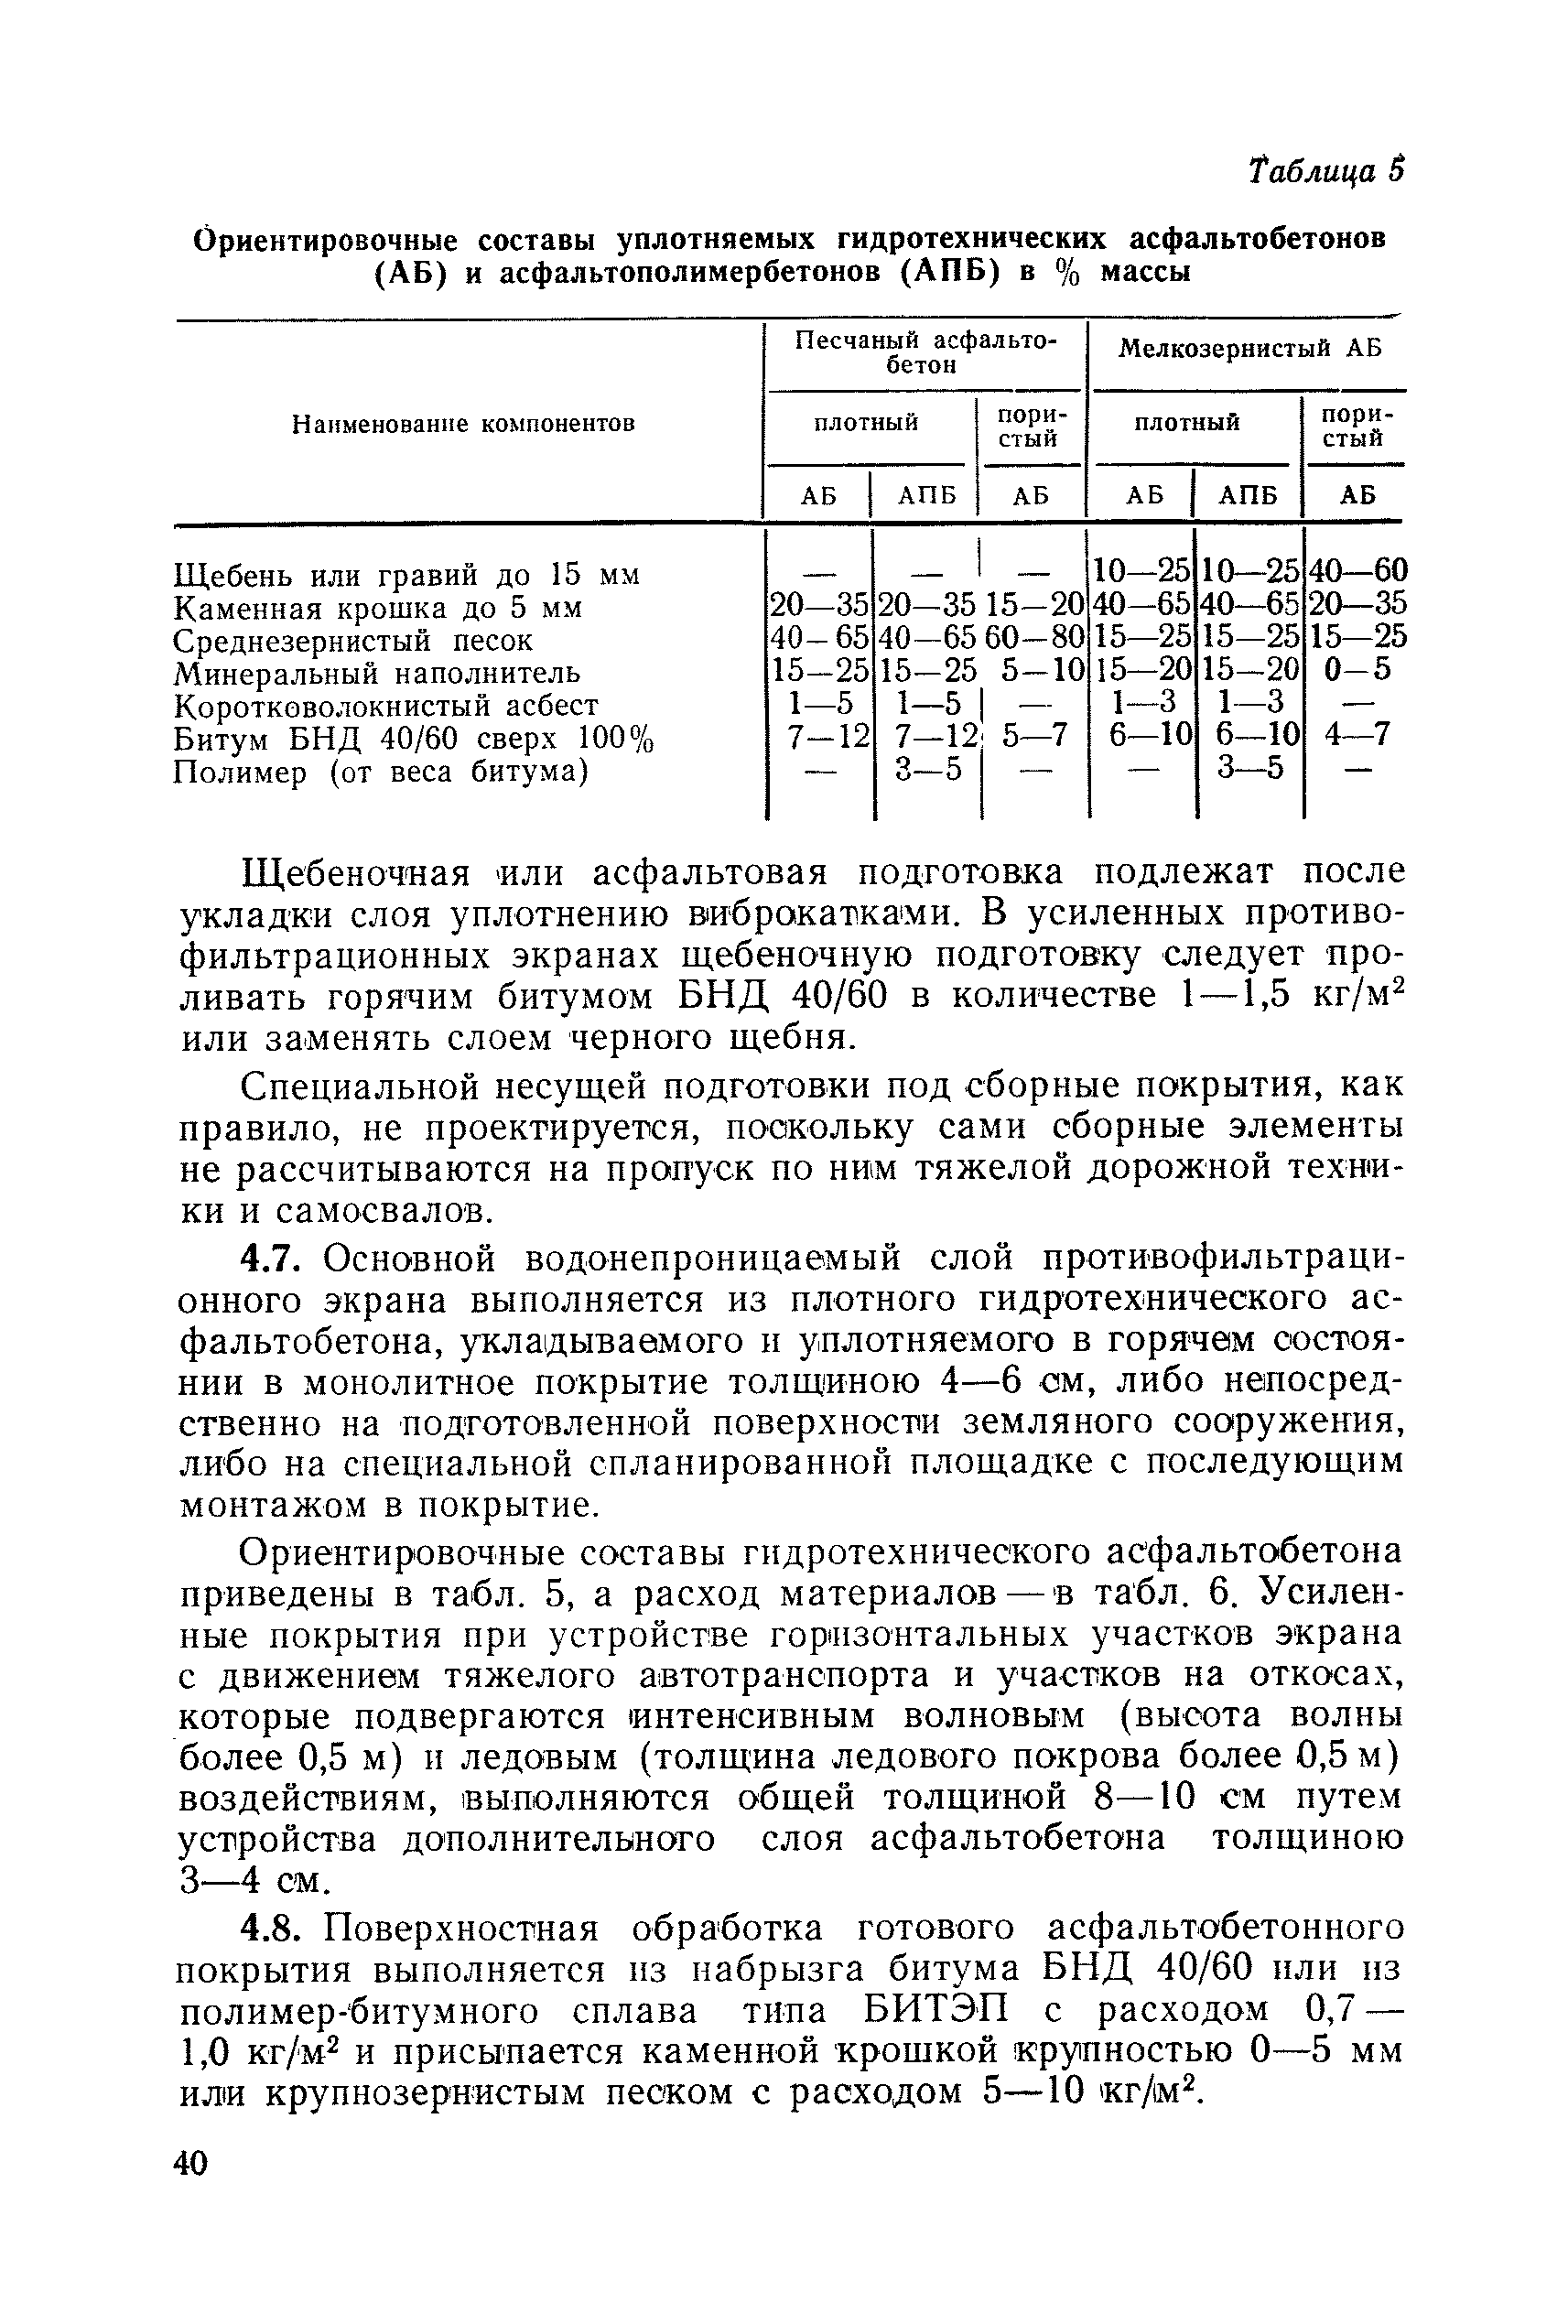 П 82-79/ВНИИГ